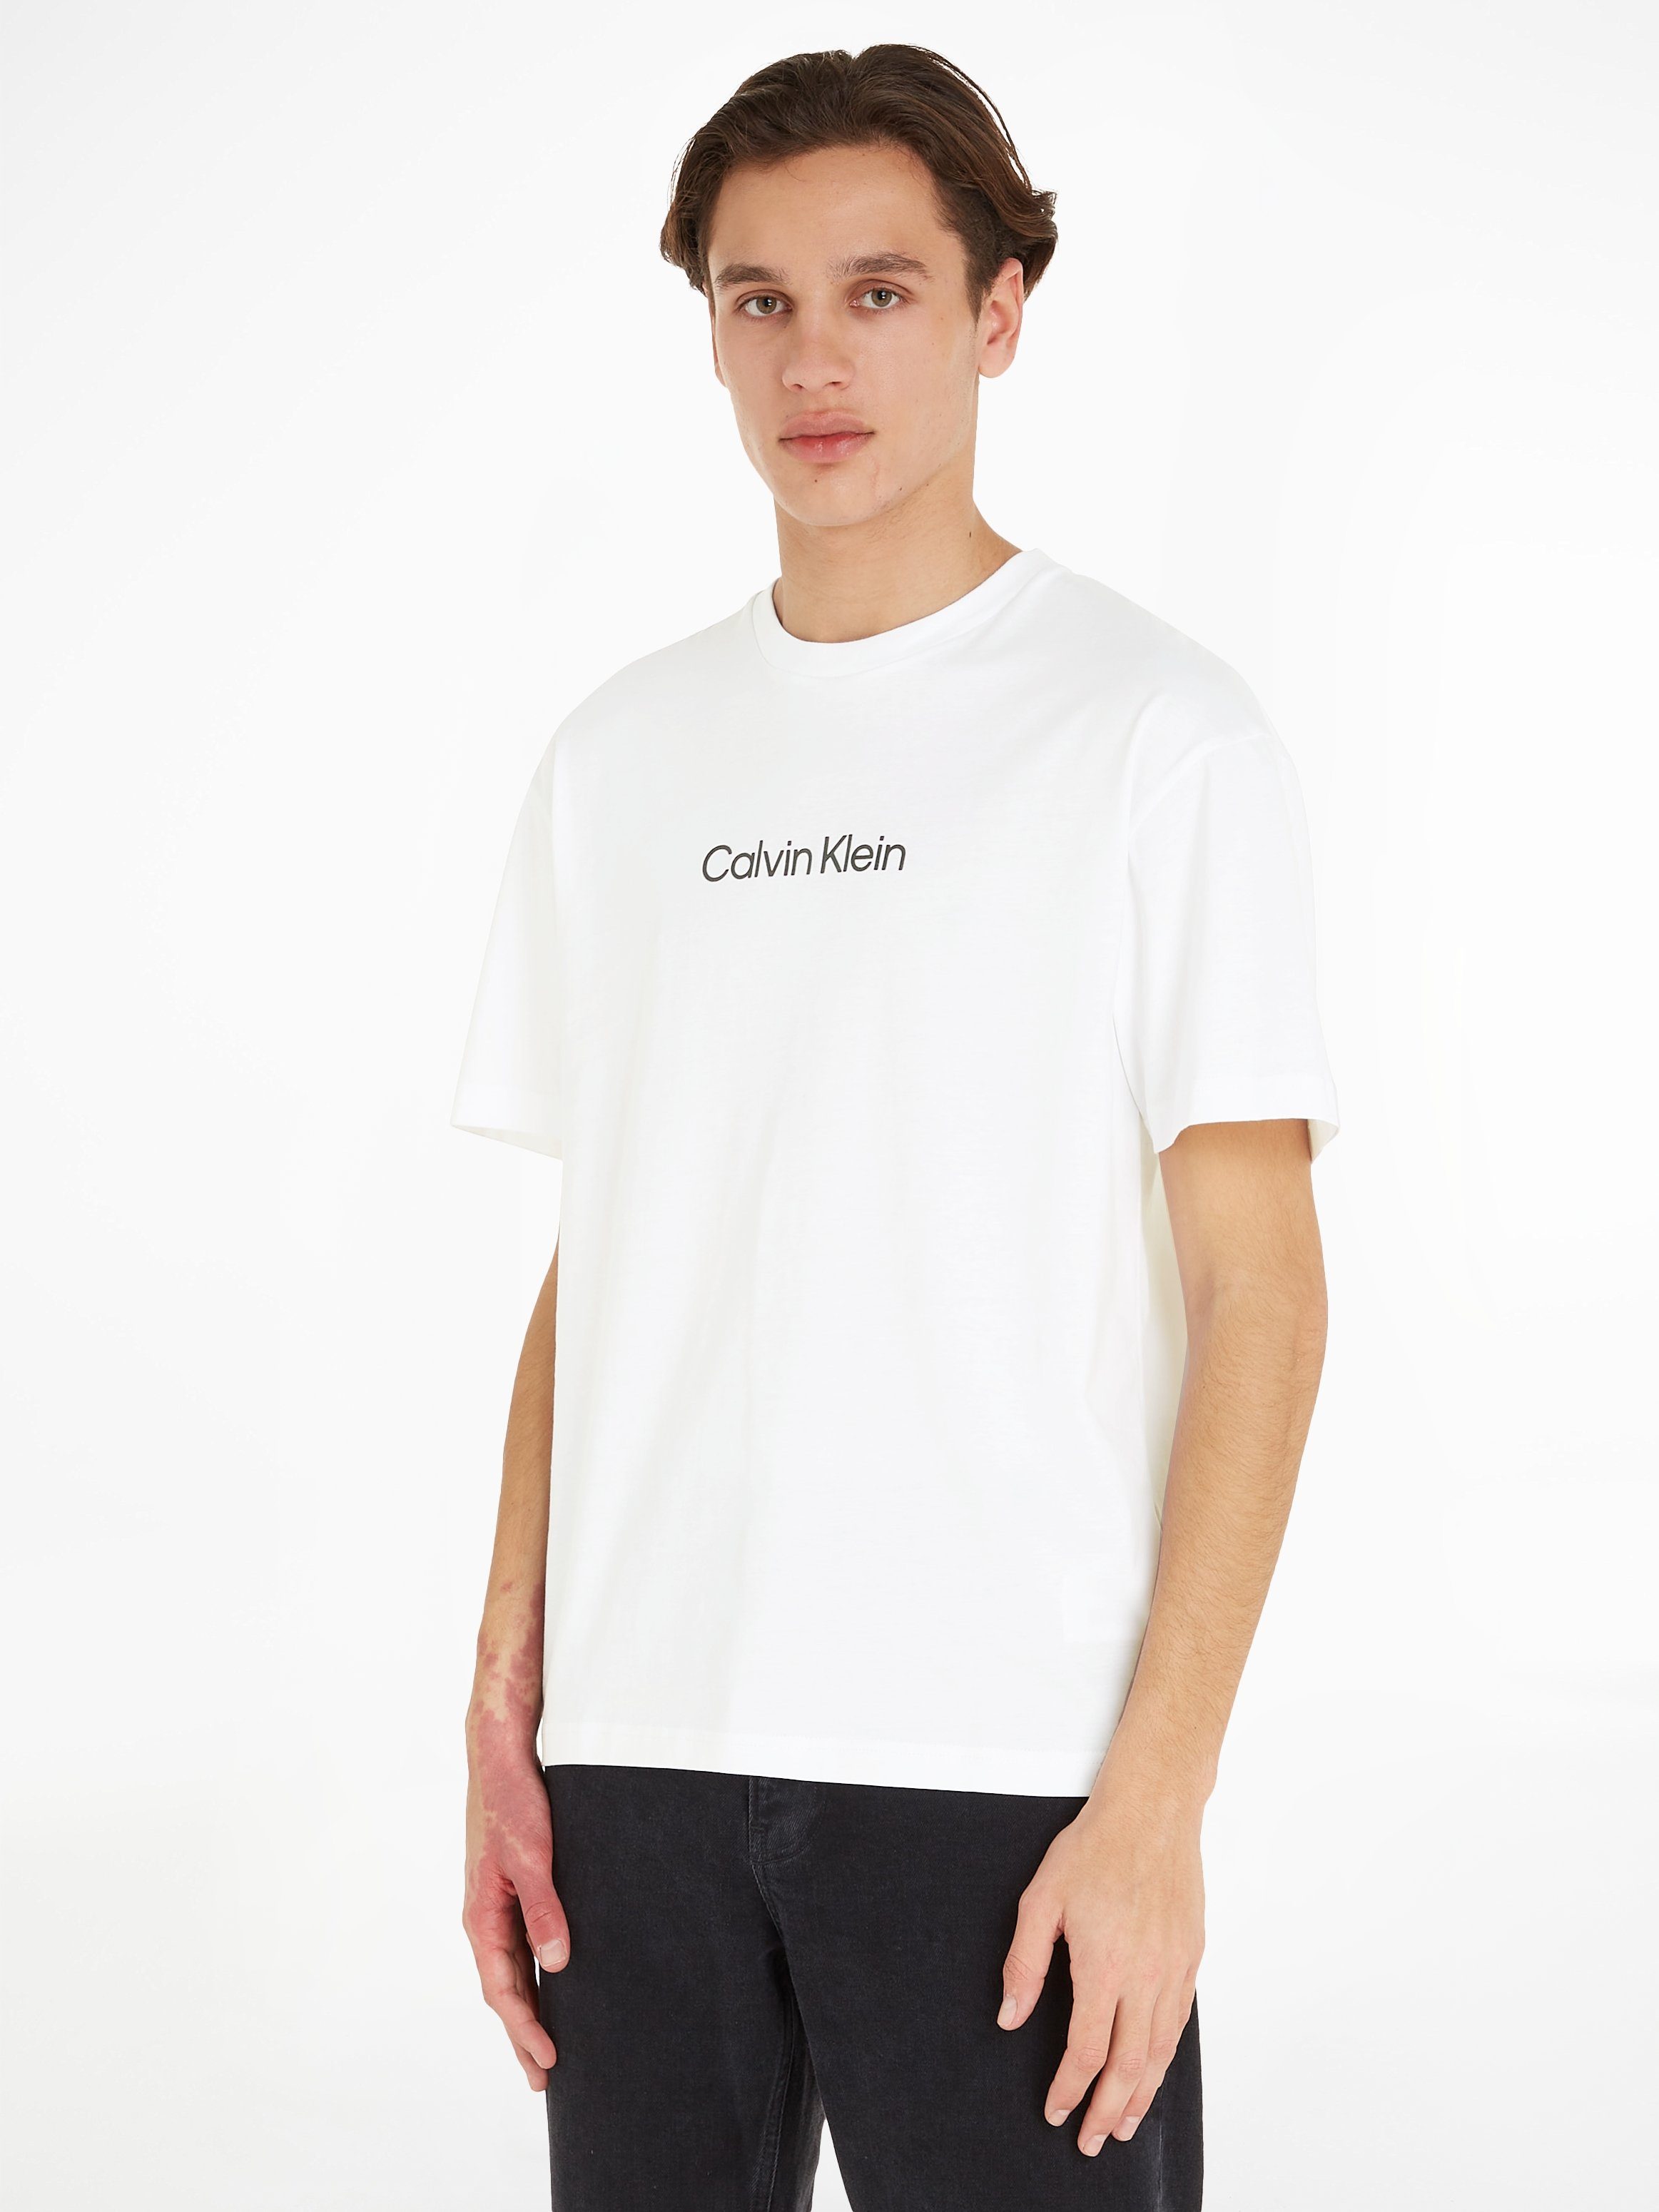 Verkaufsförderungsstrategie Calvin Klein COMFORT LOGO Bright aufgedrucktem mit T-SHIRT HERO Markenlabel White T-Shirt